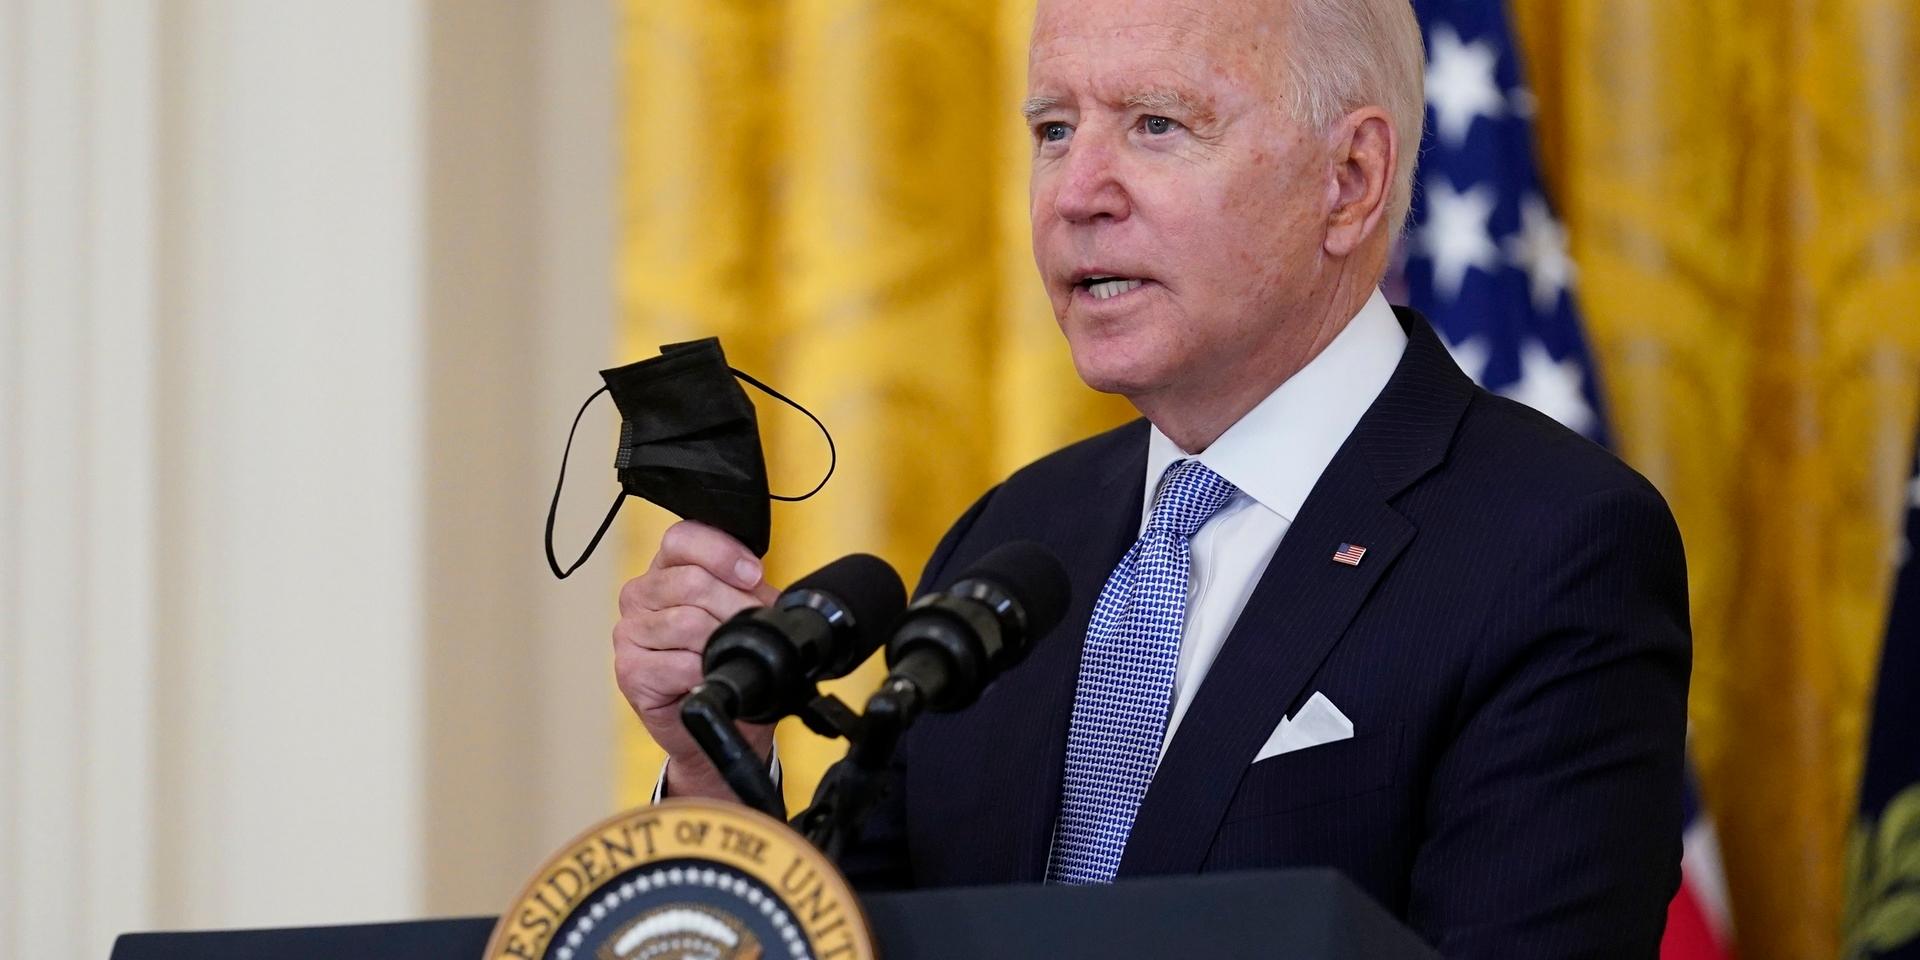 President Joe Biden manar i ett tal alla i USA att vaccinera sig mot covid-19.